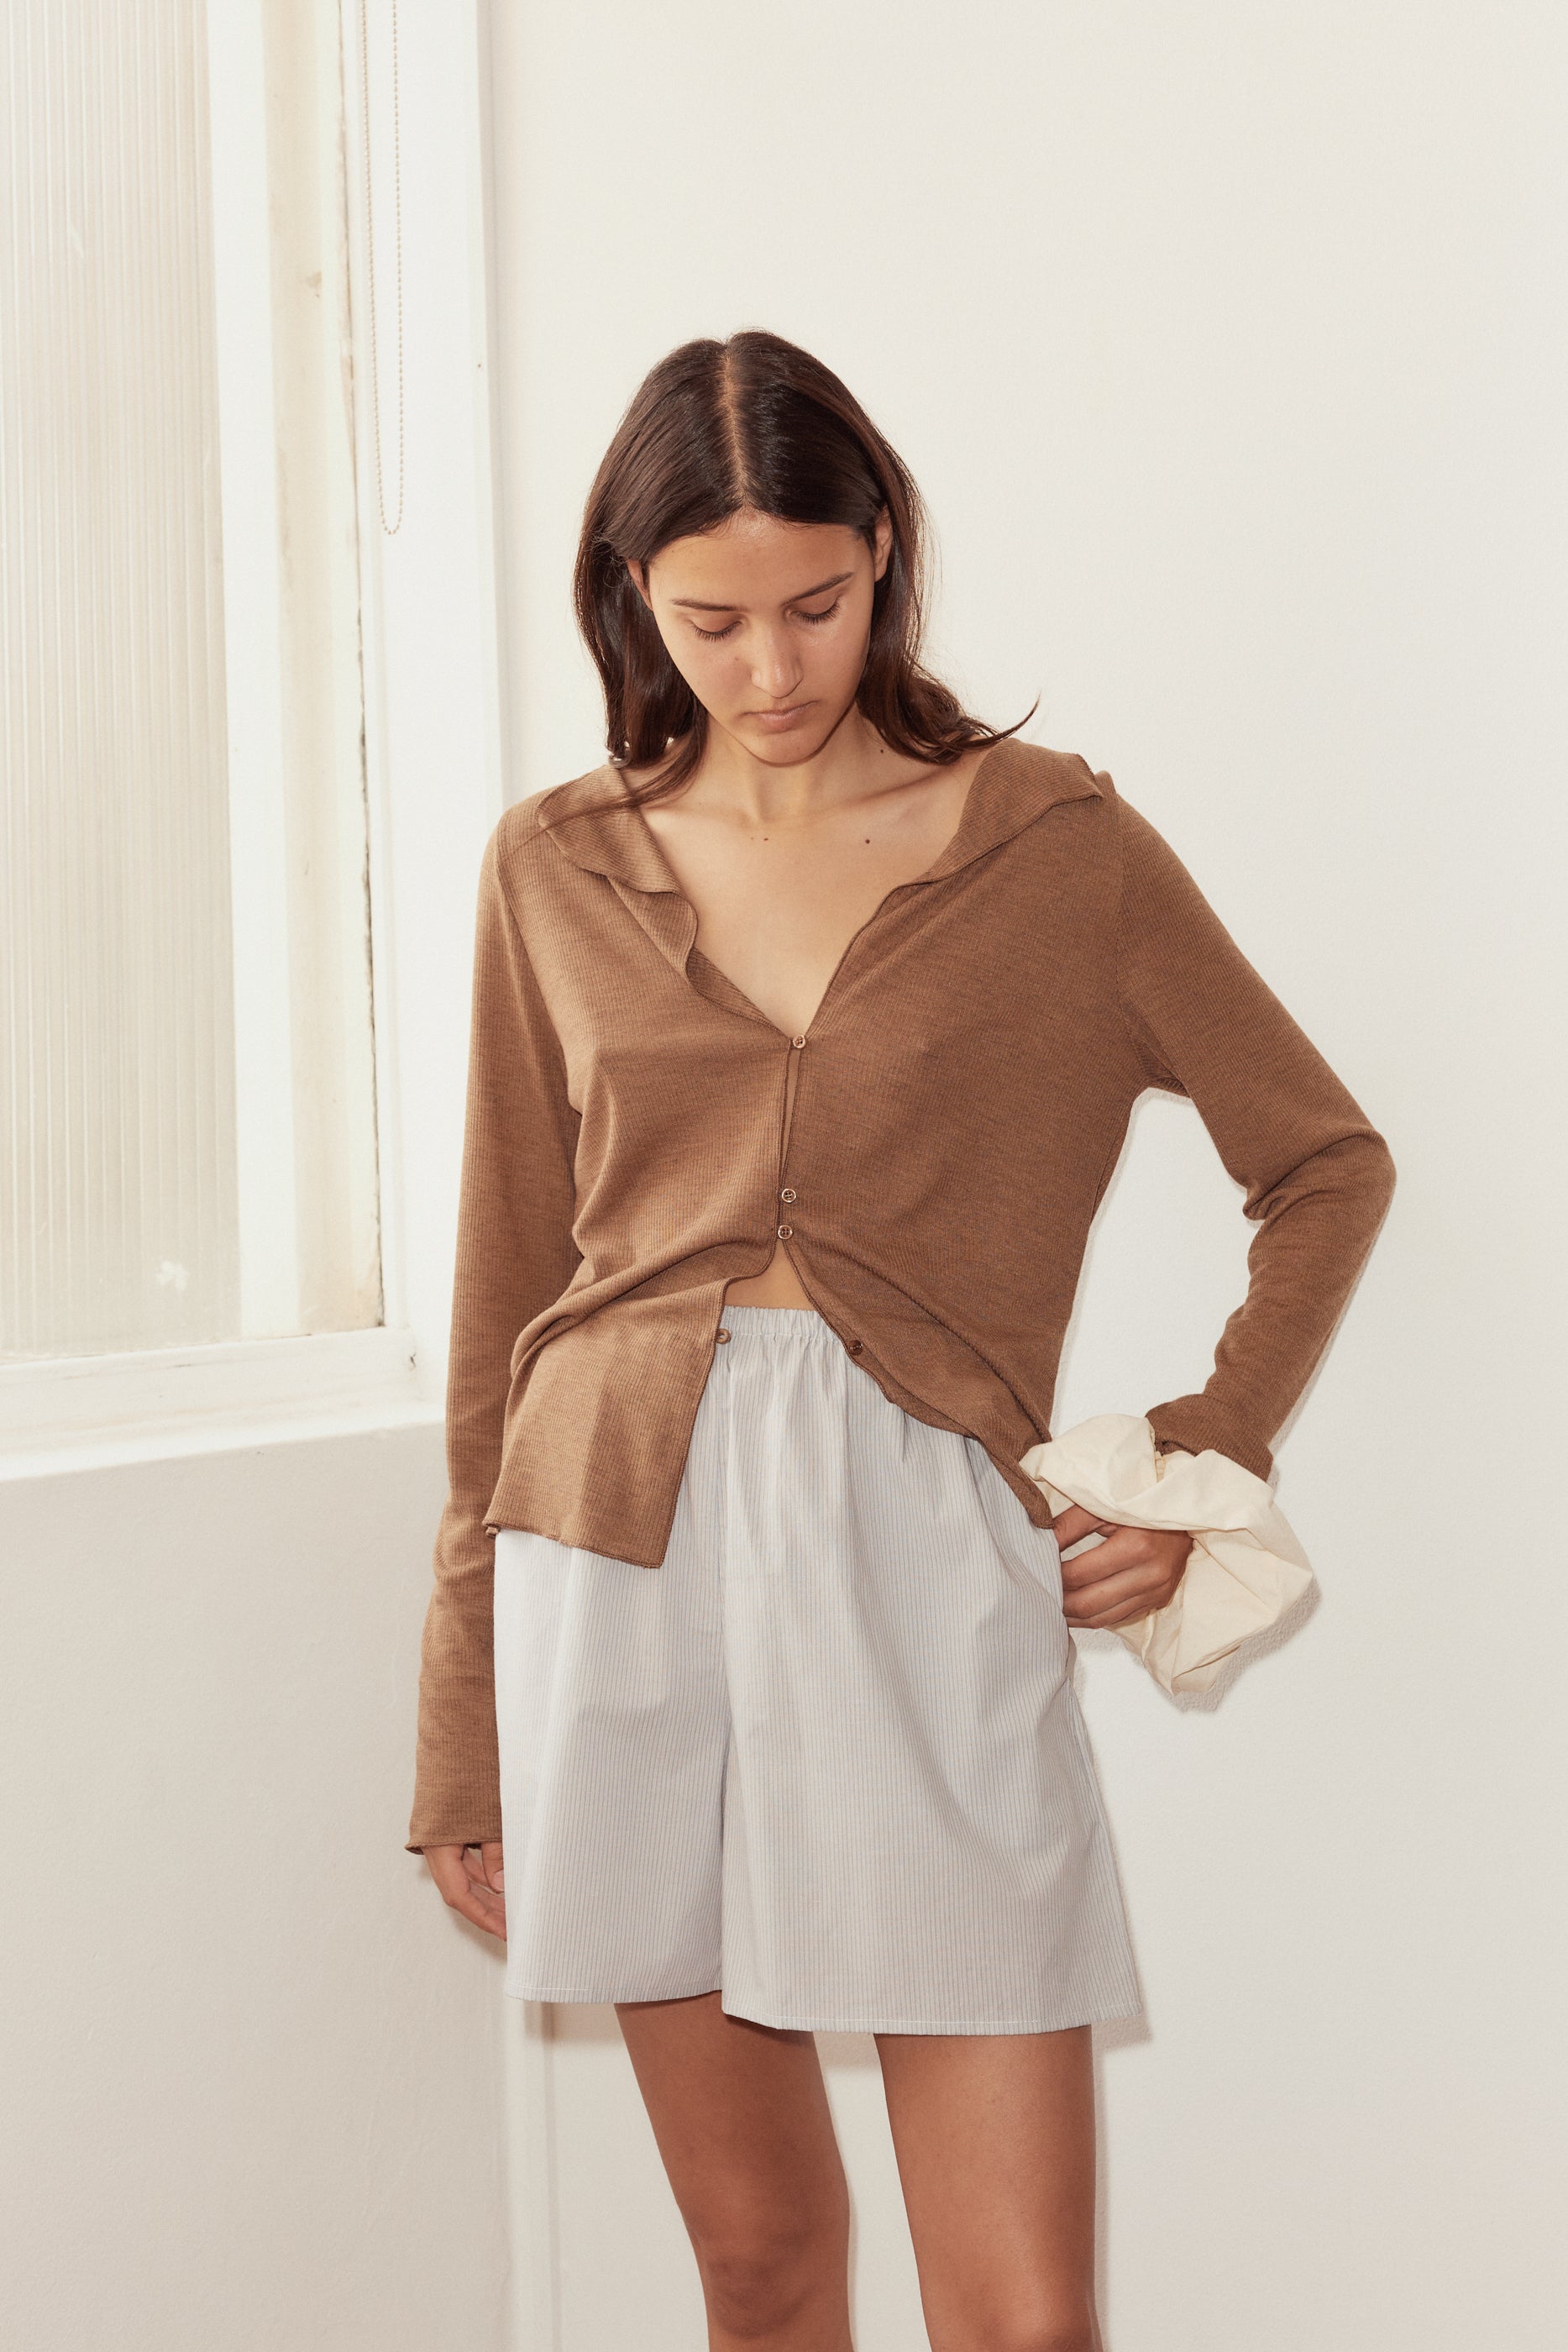 Female model wearing Mid Short - Dream Stripe by Deiji Studios against plain background